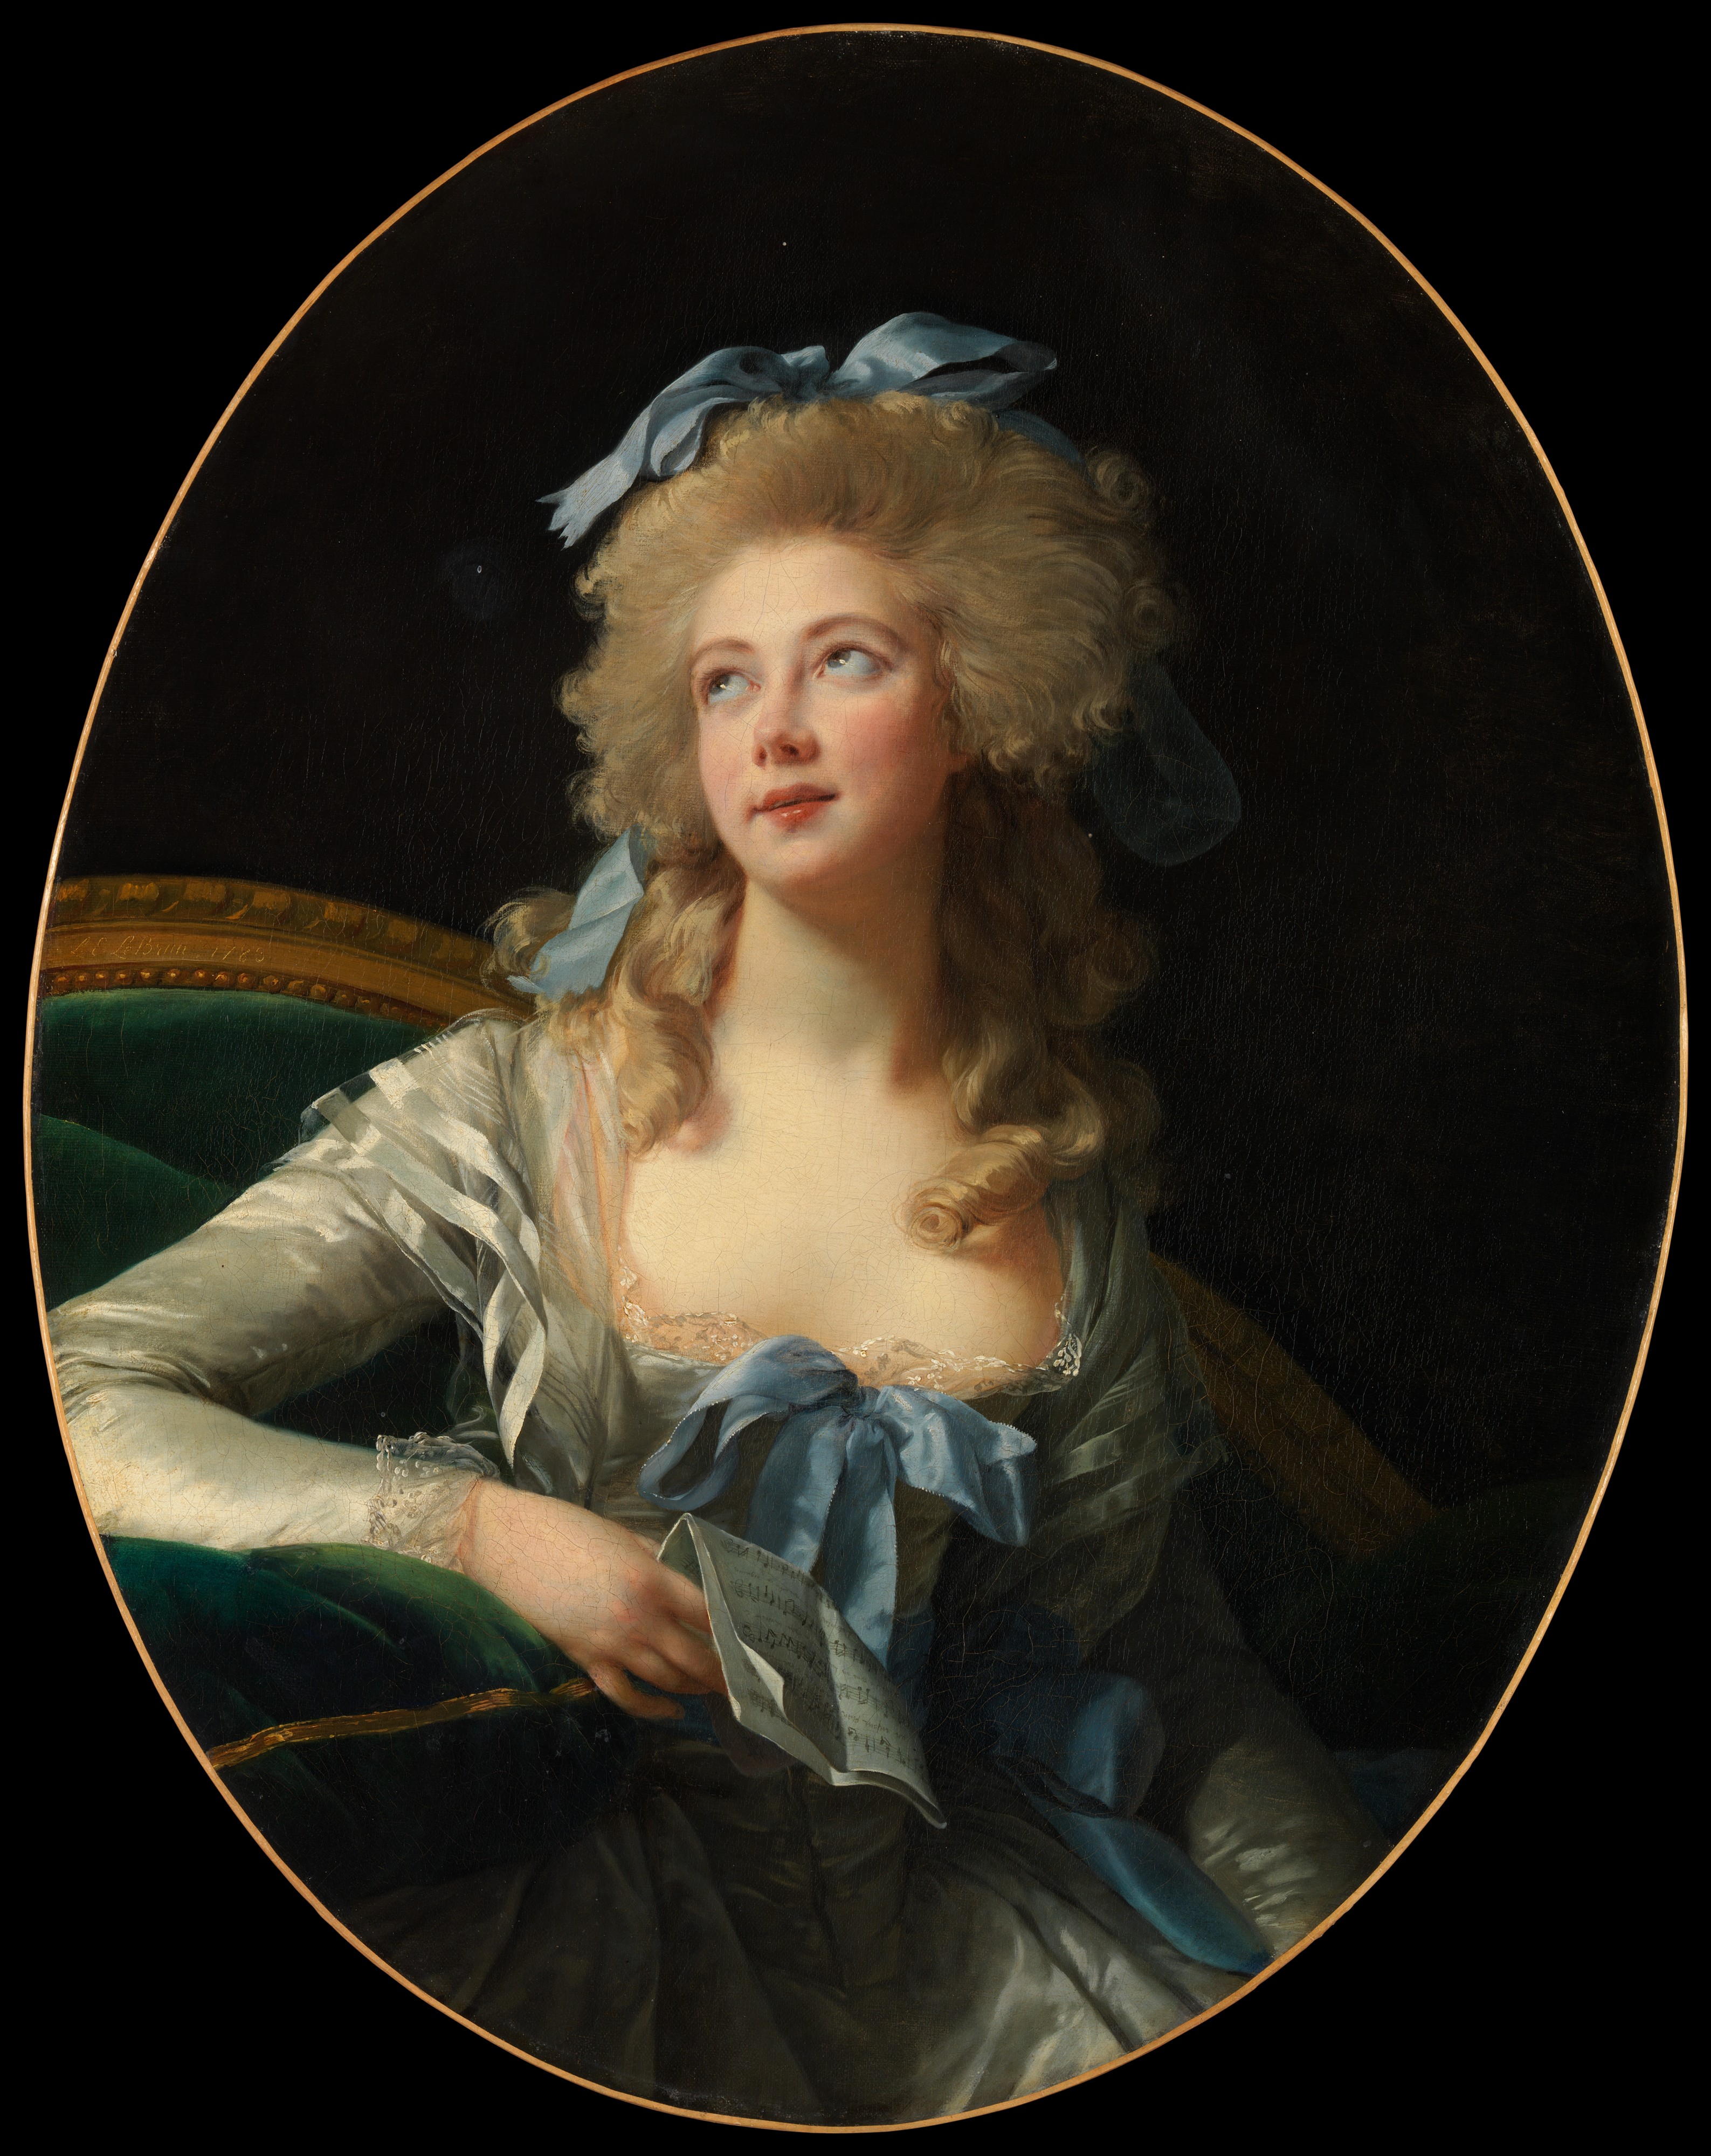 Madame Grand (Noël Catherine Vorlée) by Élisabeth Vigée Le Brun - 1783 Museo Metropolitano de Arte